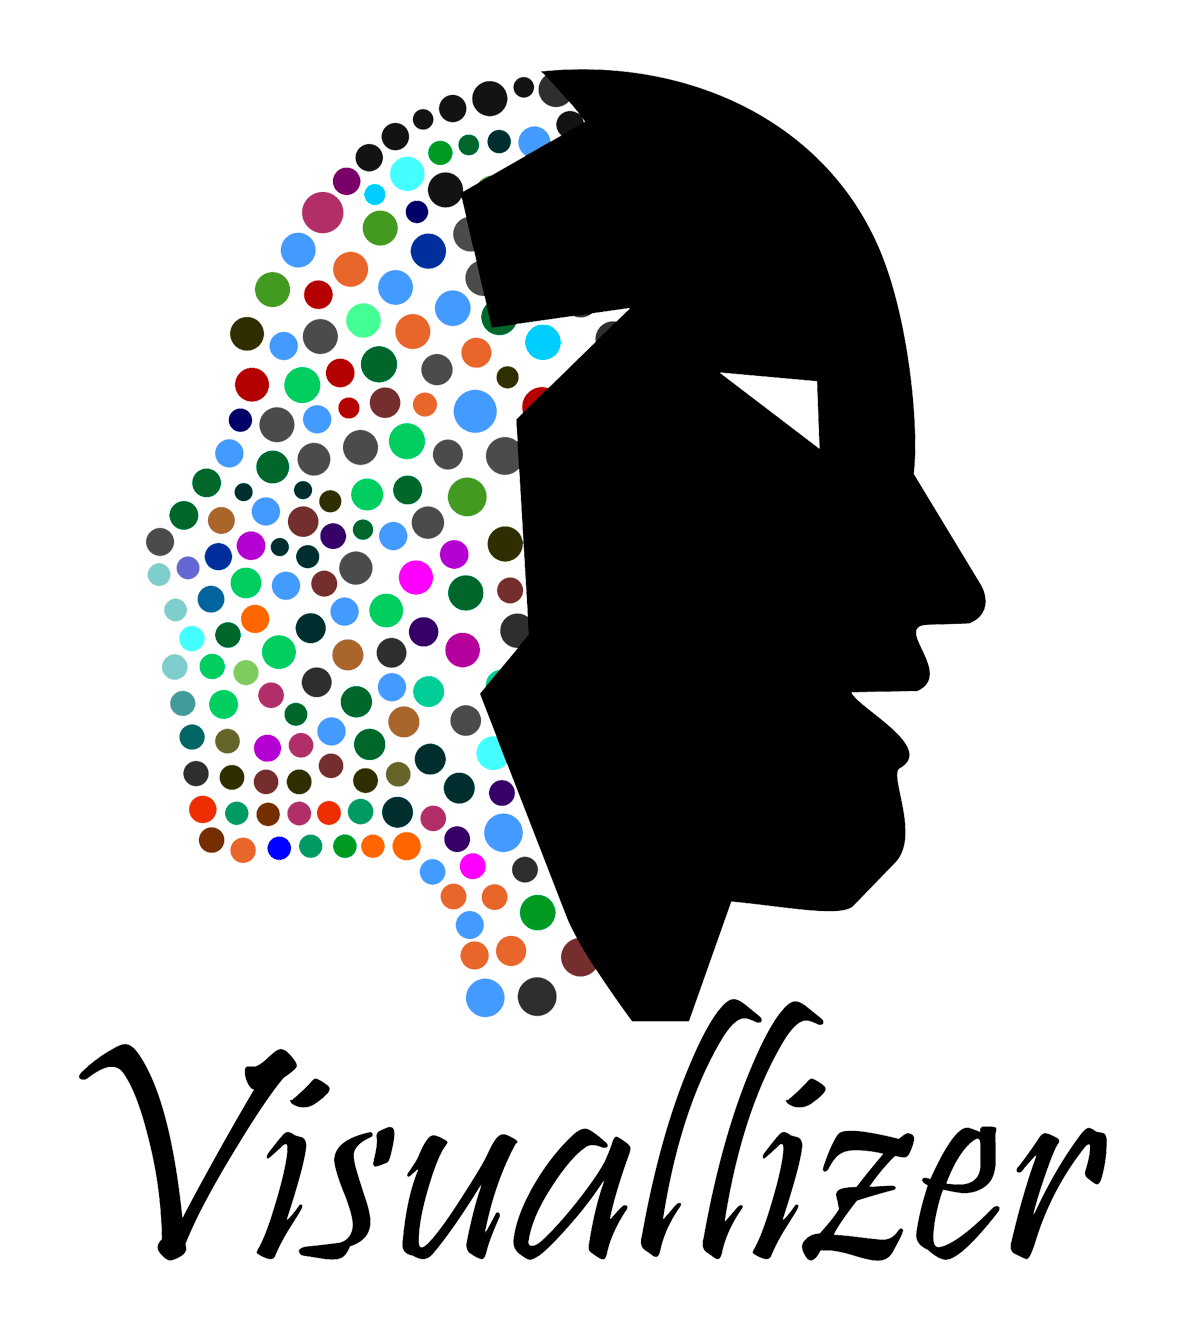 Visuallizer